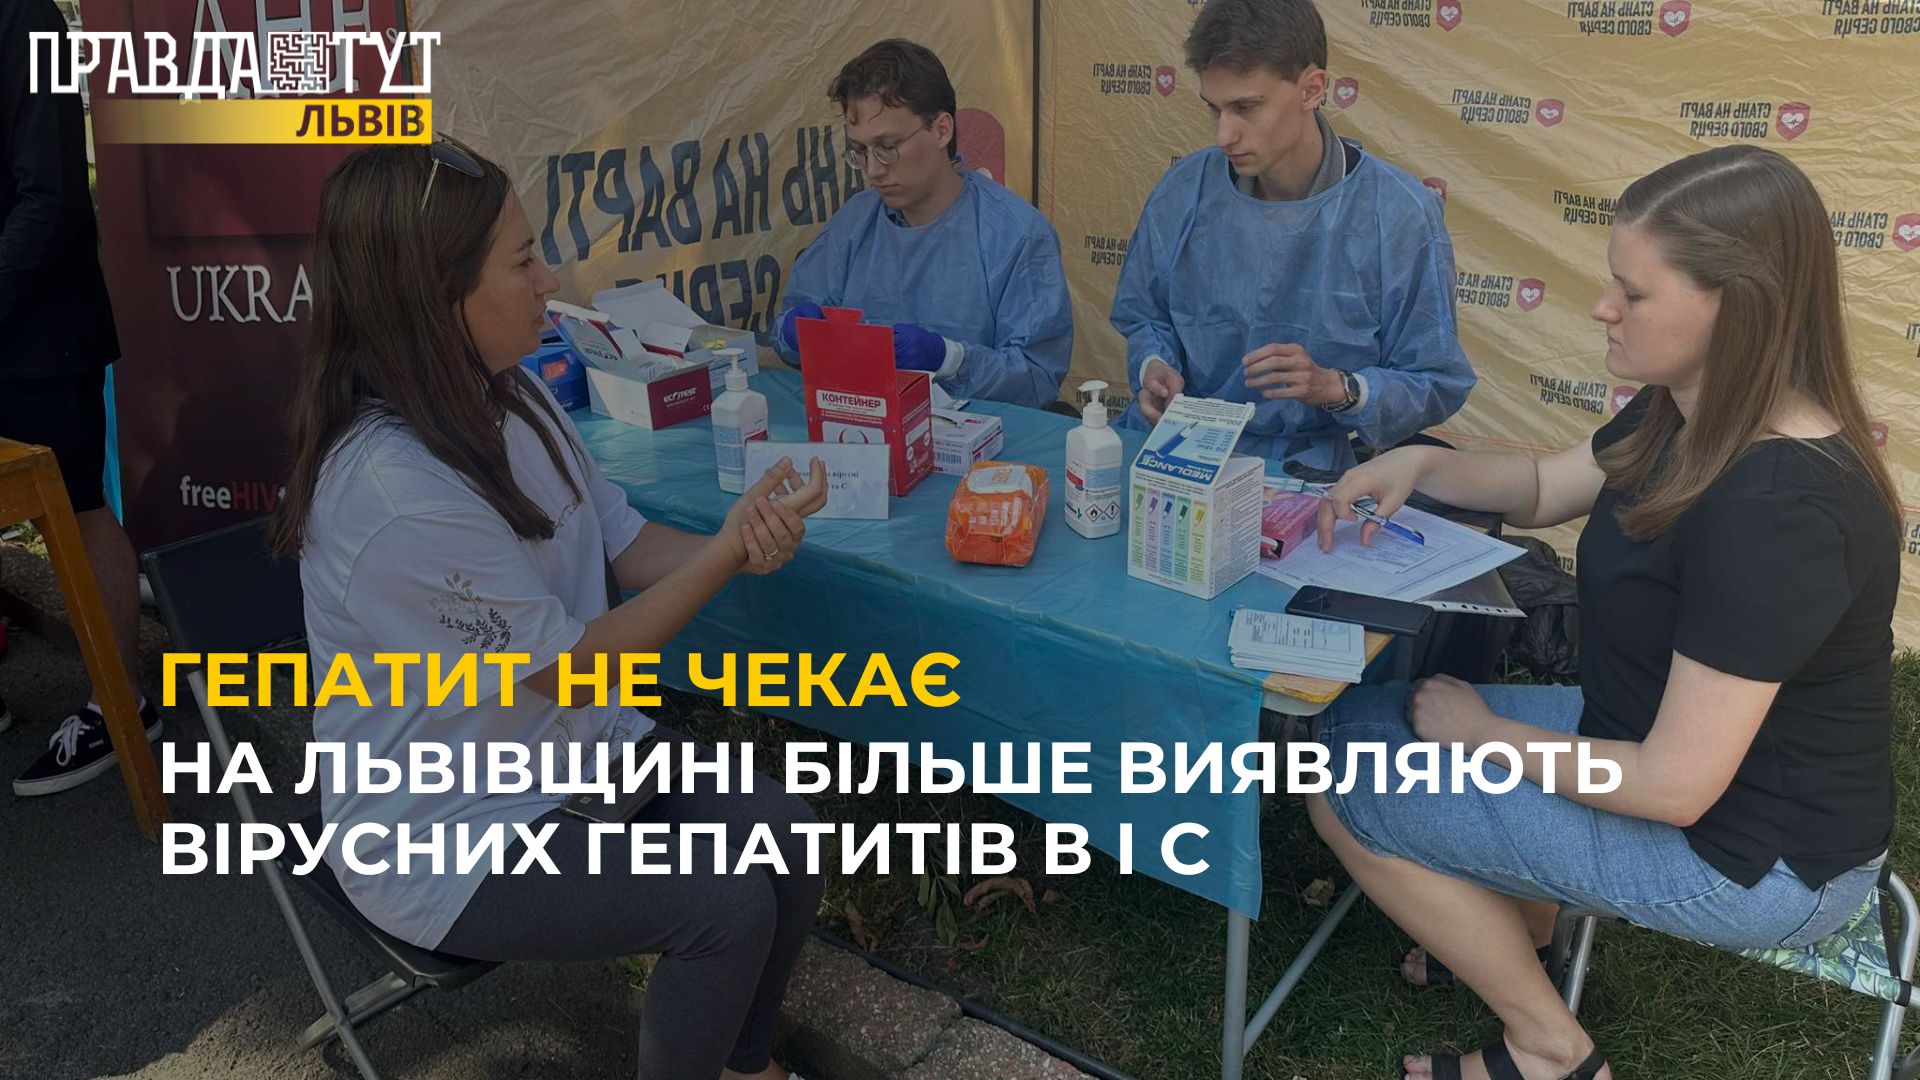 У Львові тестували охочих на вірусний гепатит В і С